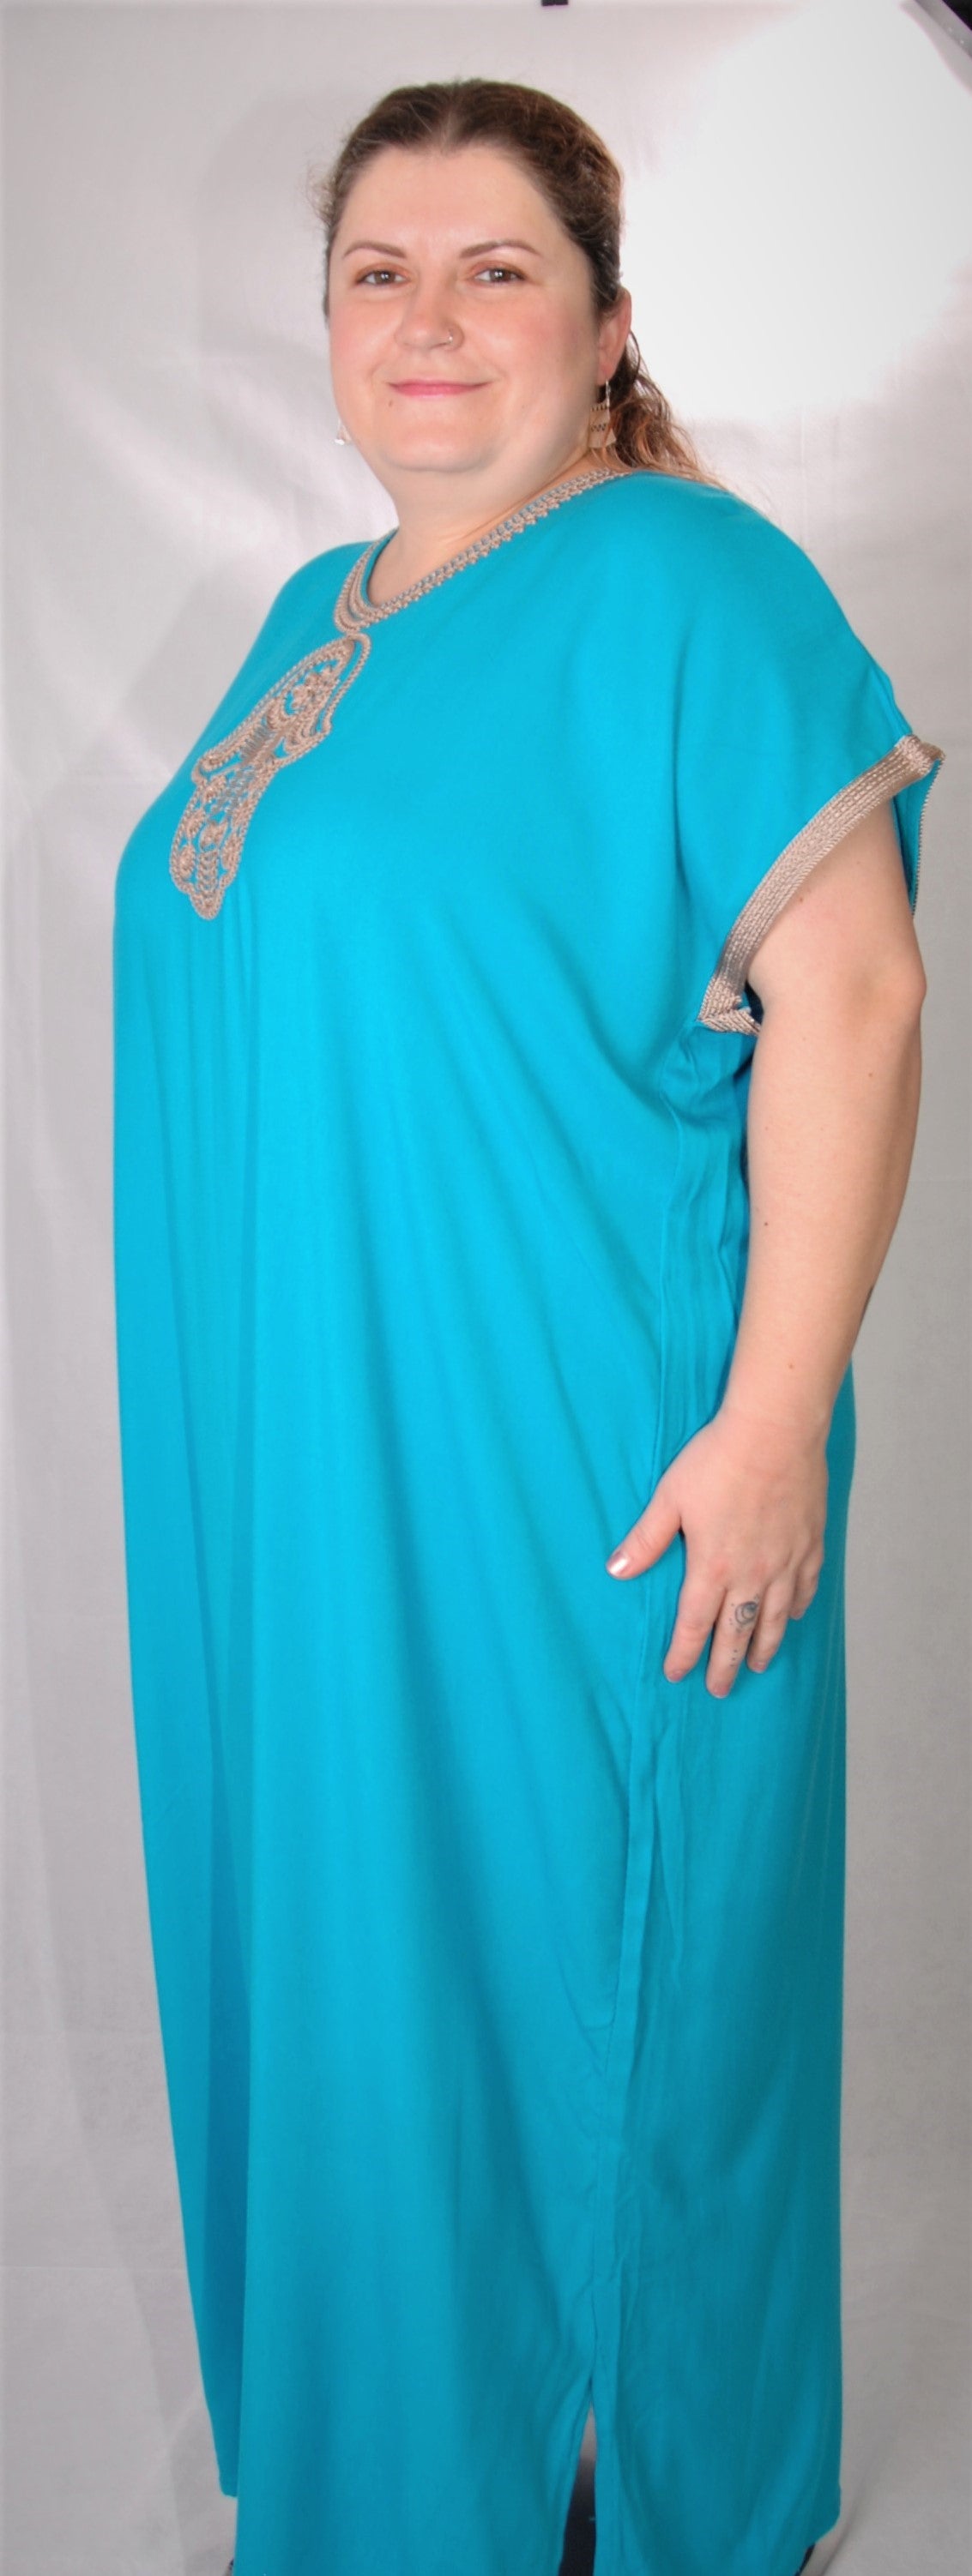 Gondura marocaine - turquoise - taille unique